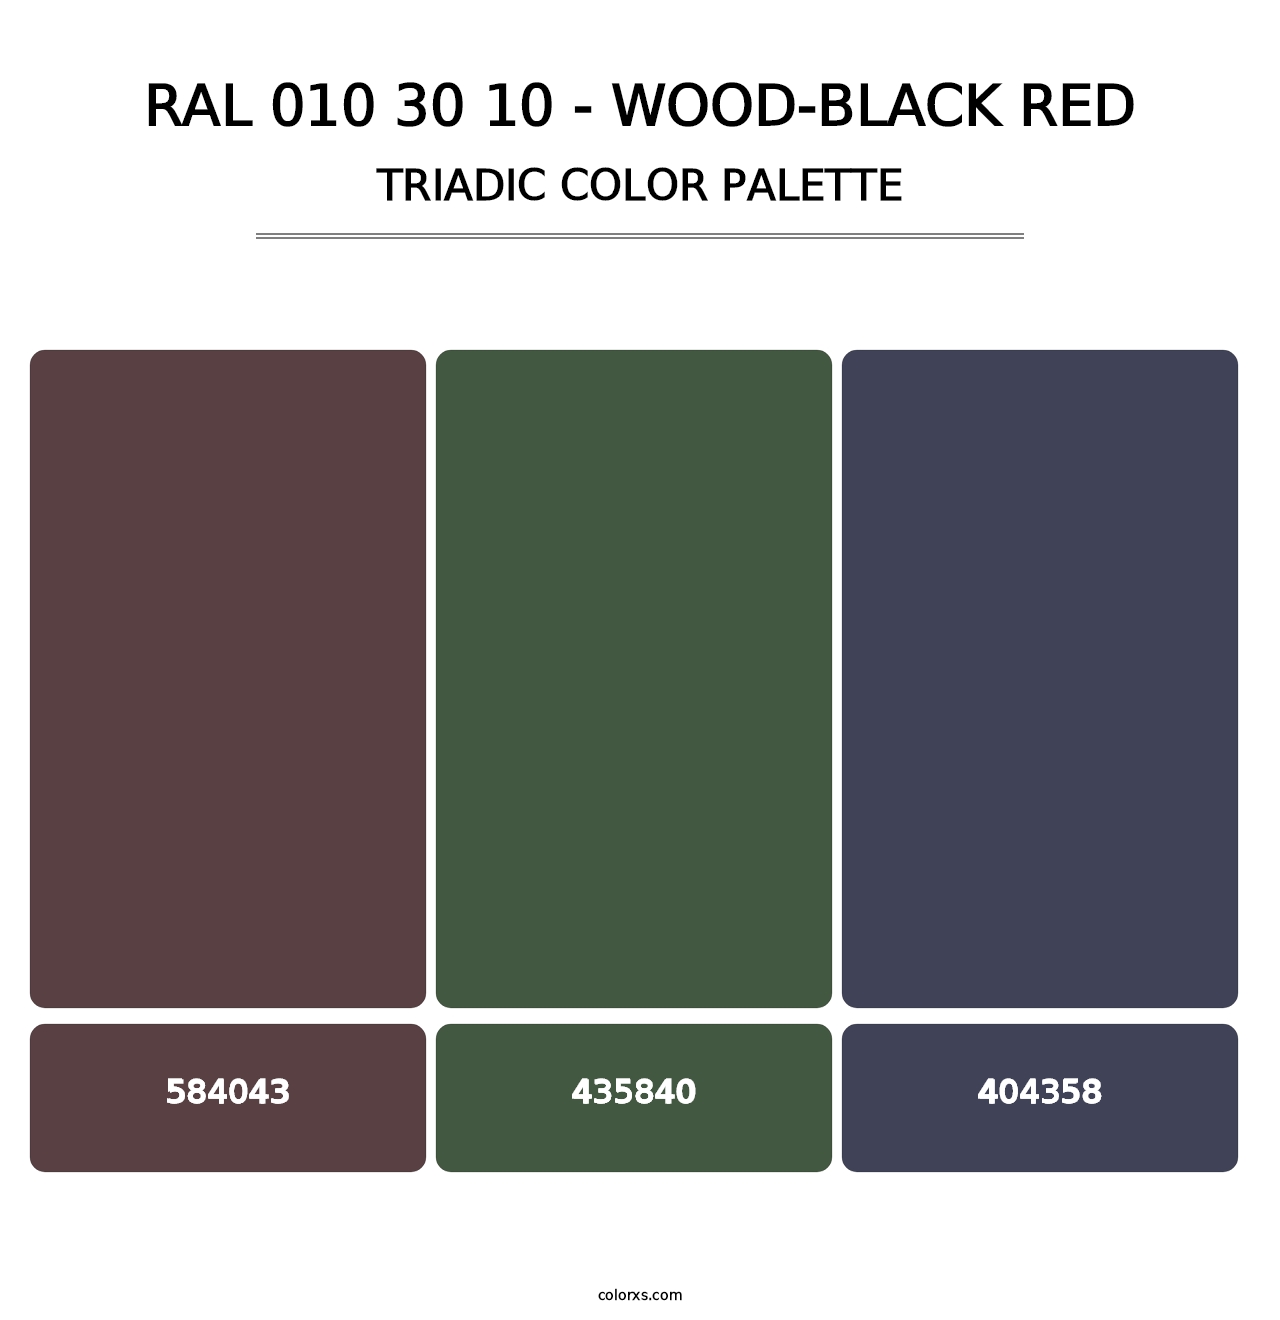 RAL 010 30 10 - Wood-Black Red - Triadic Color Palette